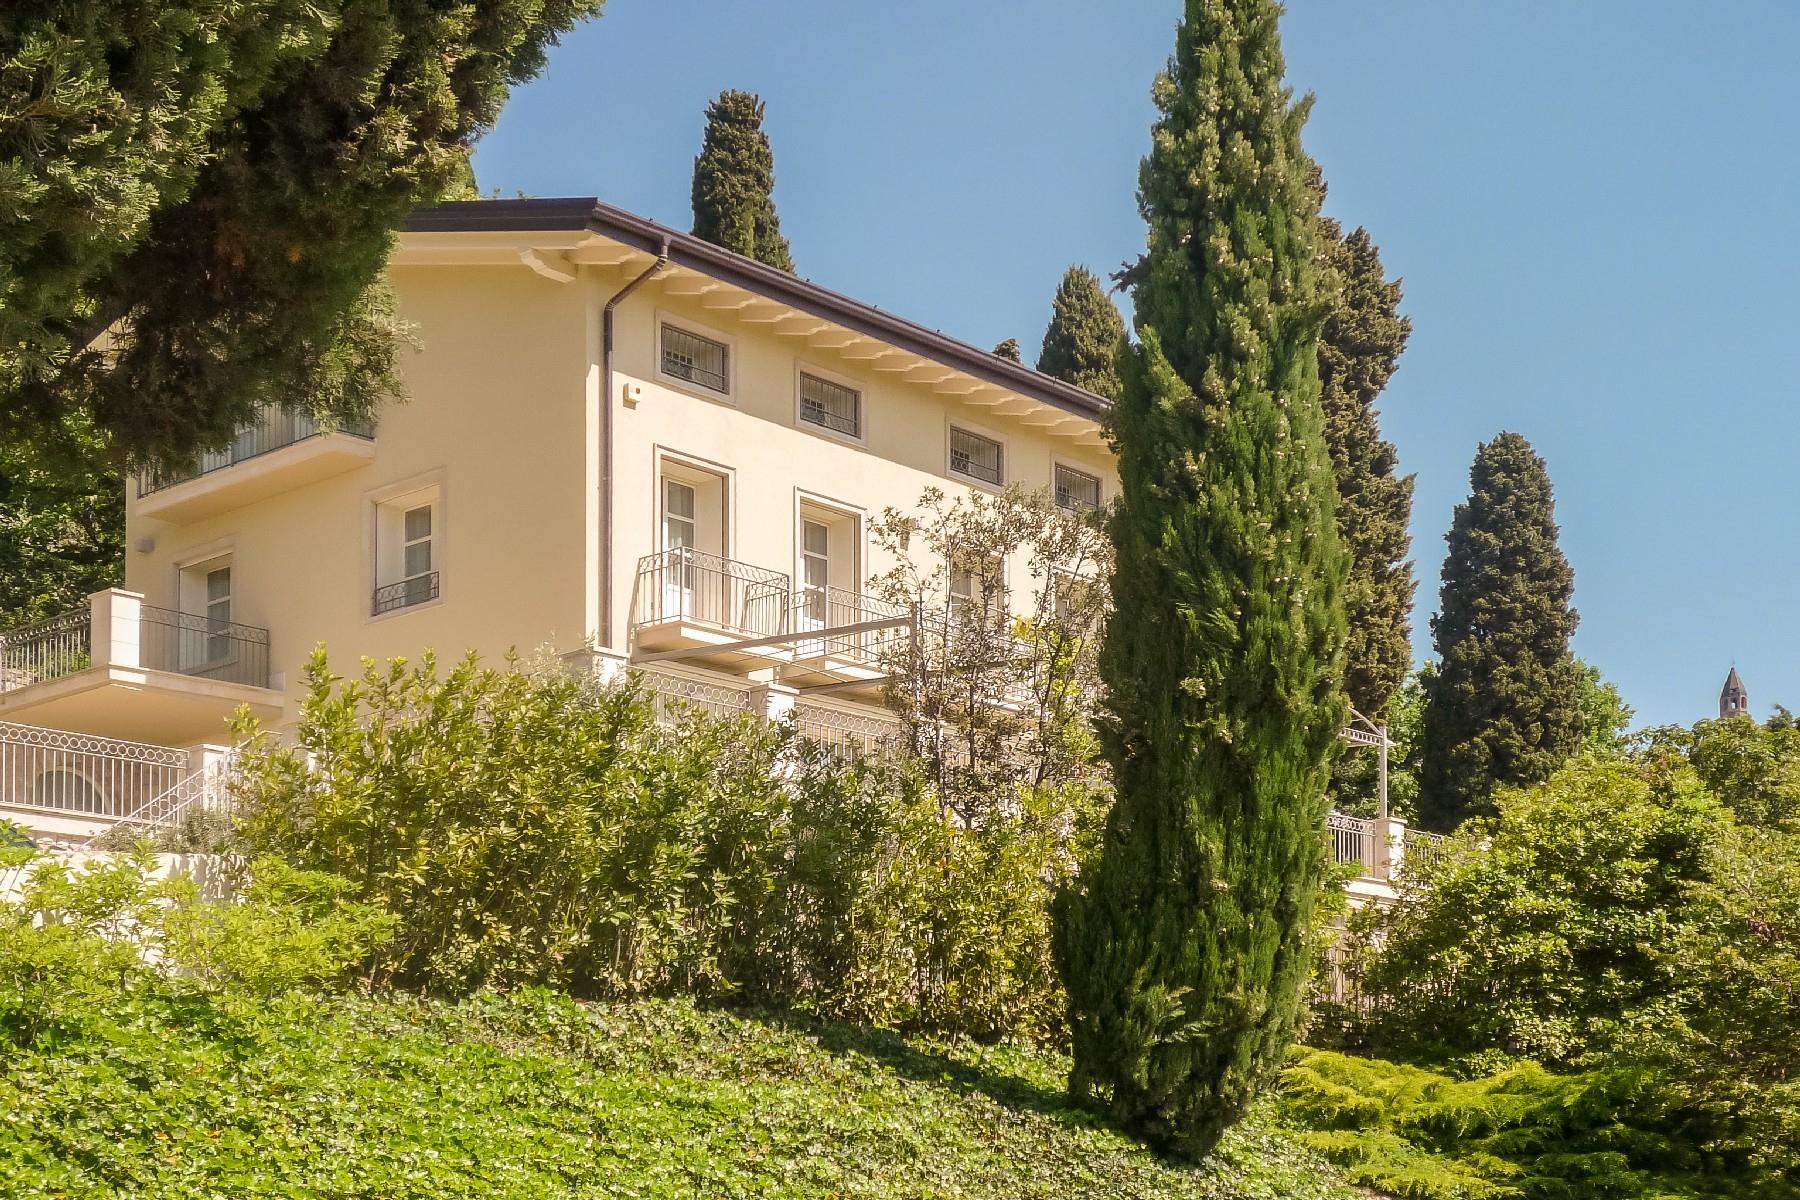 Magnifica villa con parco e piscina sui colli di Bergamo - 1